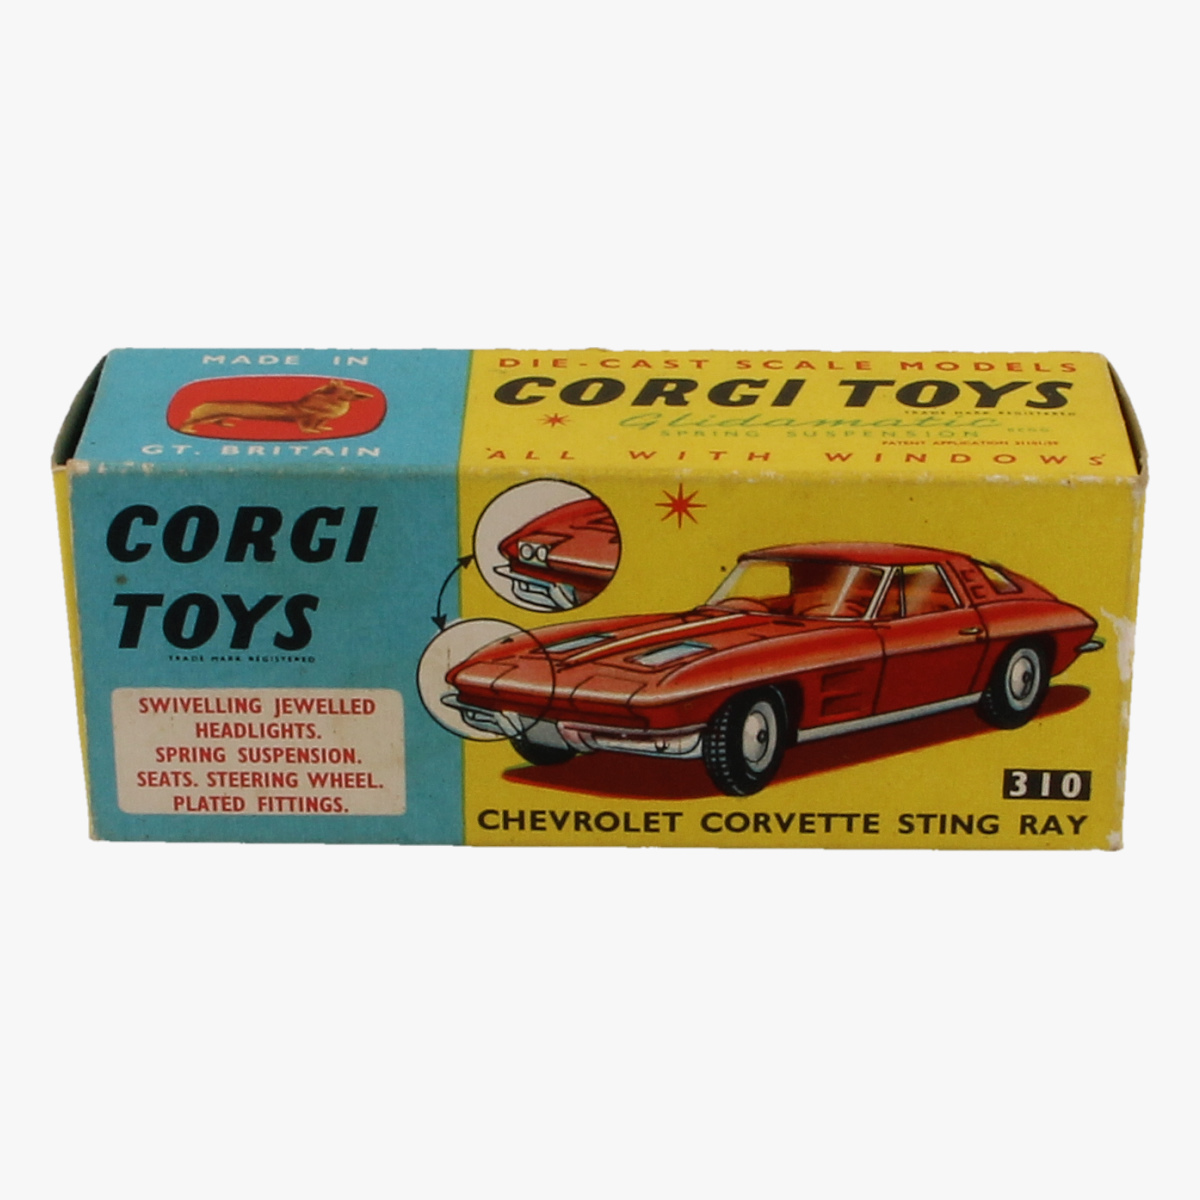 Afbeeldingen van Corgi Toys. Chevrolet Corvette Sting Ray. Nr.310